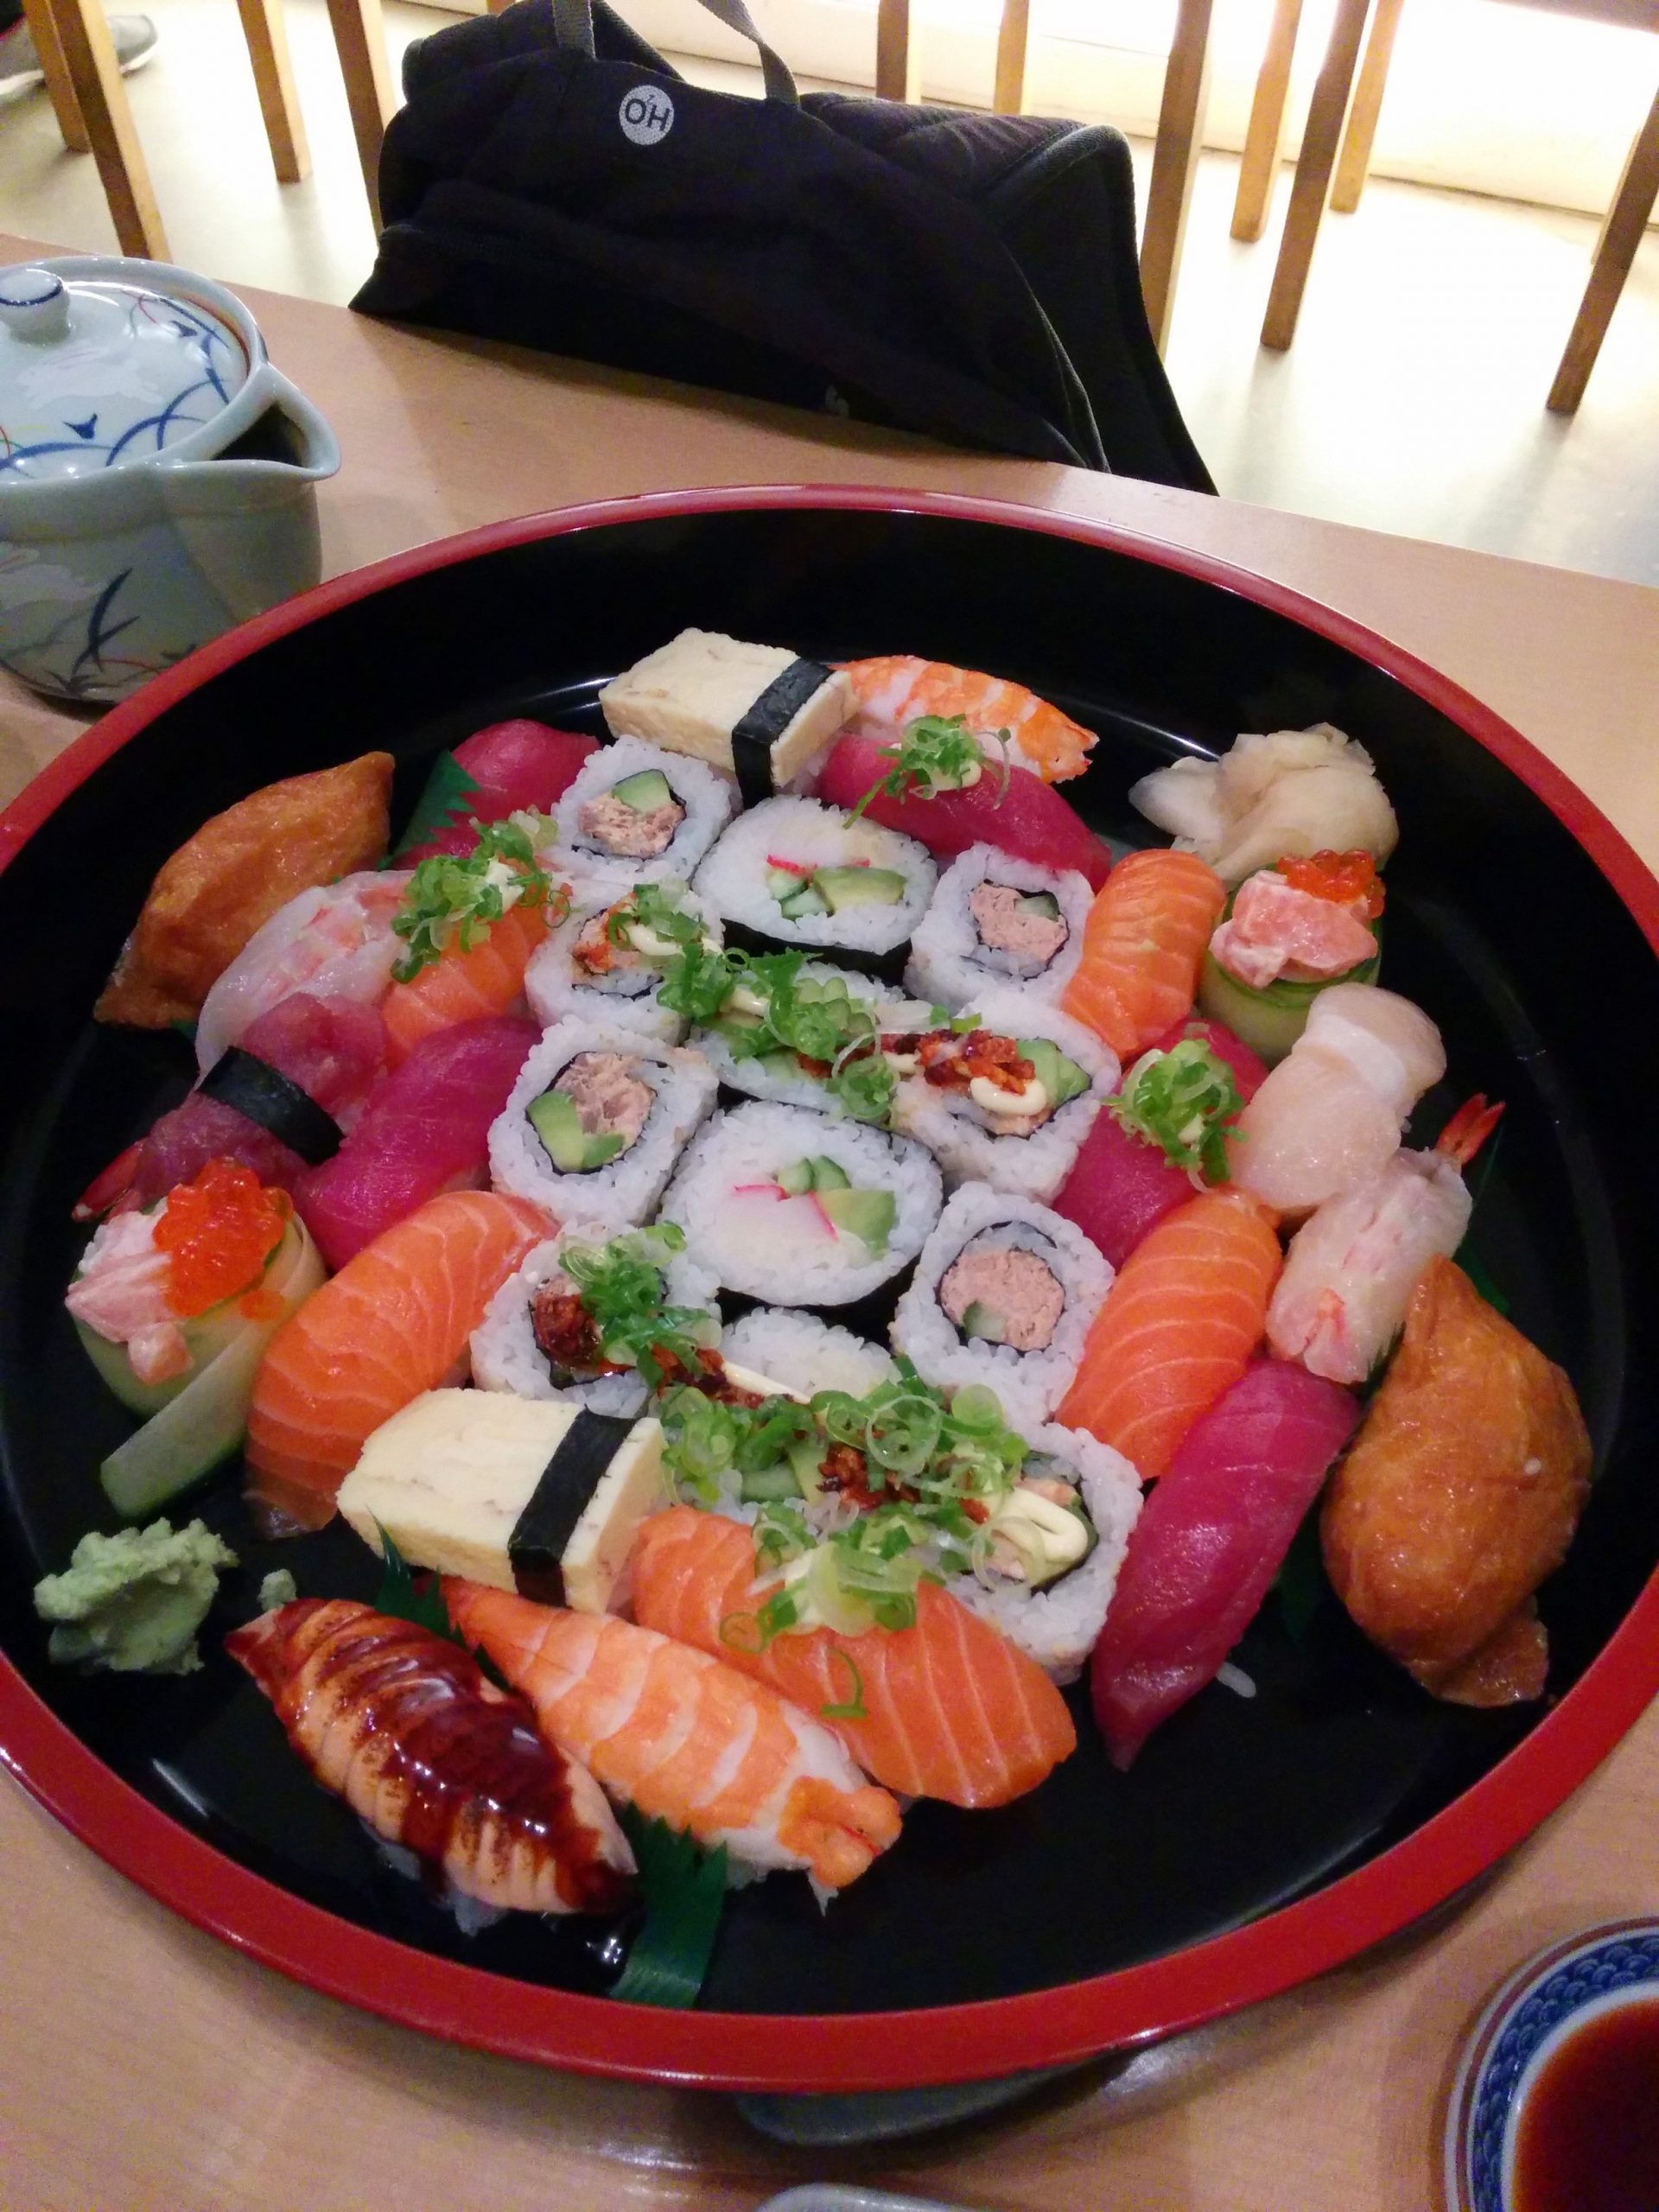 Sushi Copenhagen